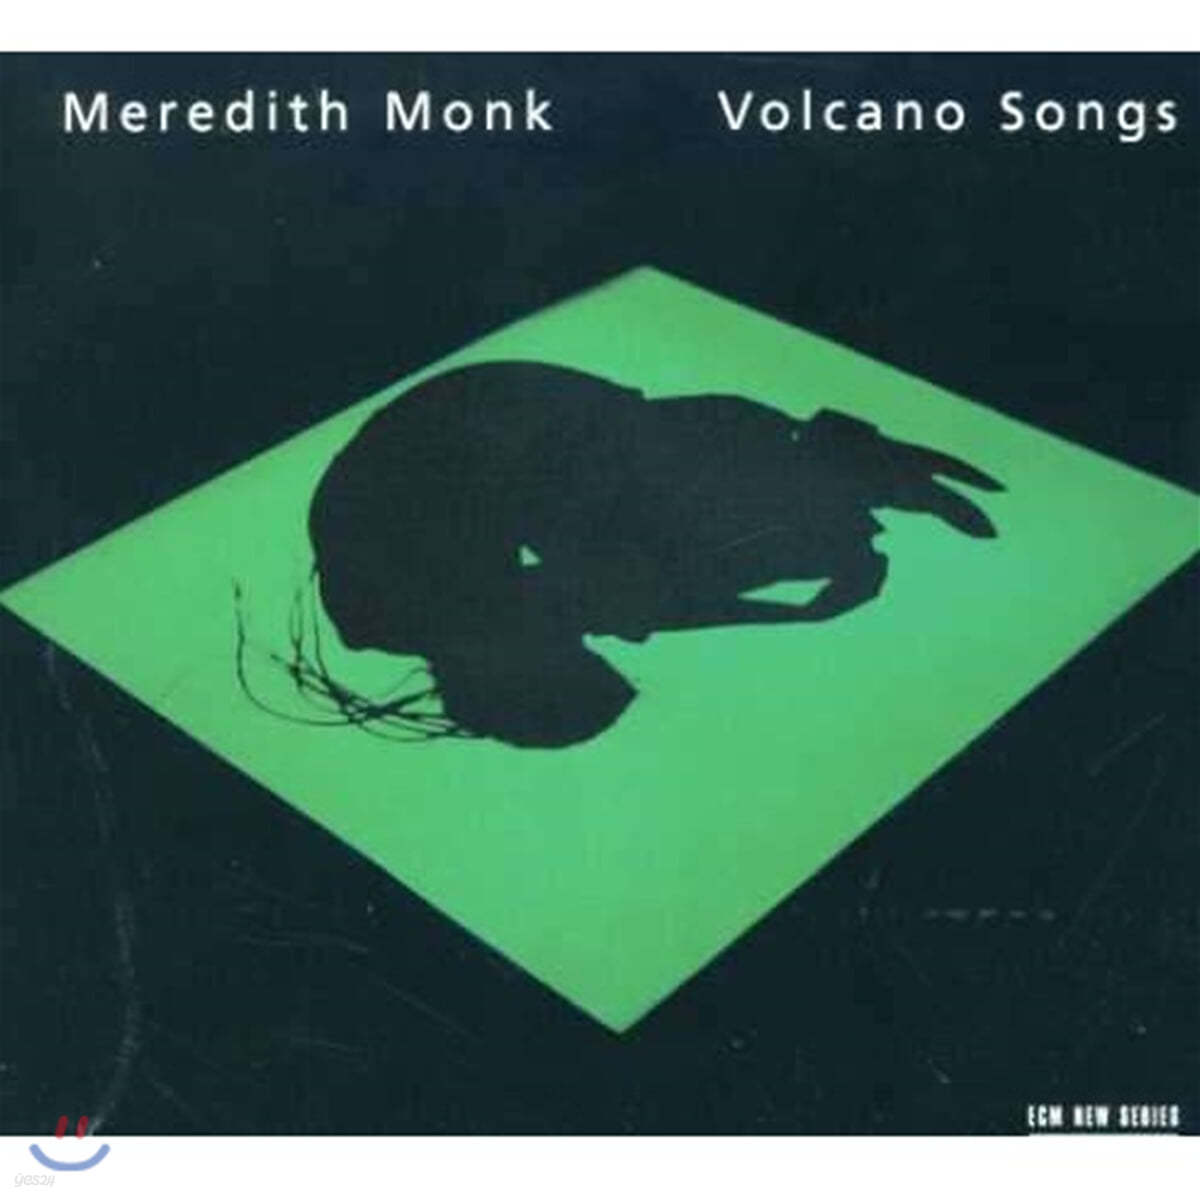 몽크: 화산의 노래 (Meredith Monk: Volcano Songs) 